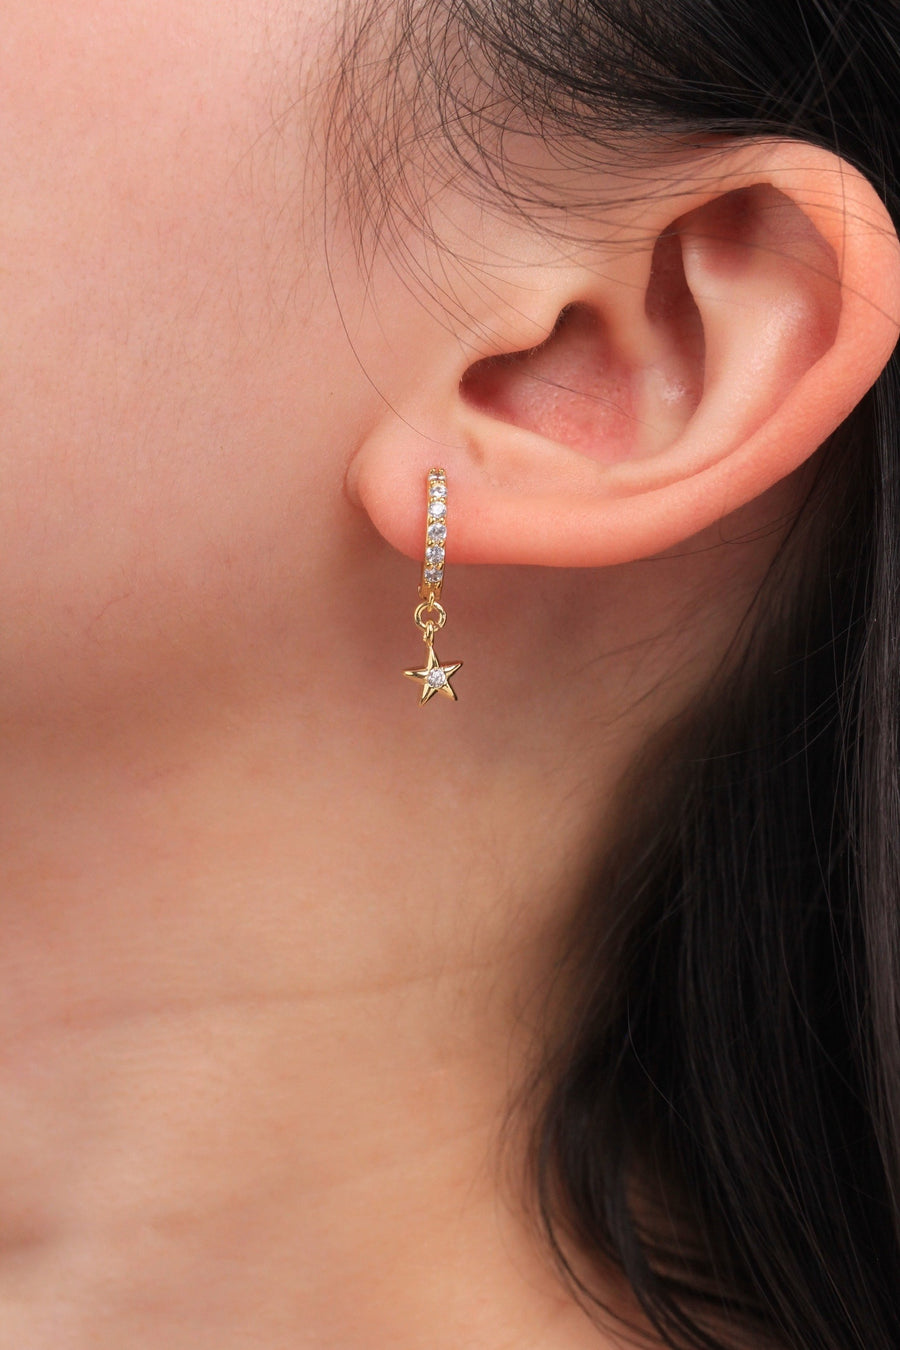 Diamond Hoop Earrings - Be a Star